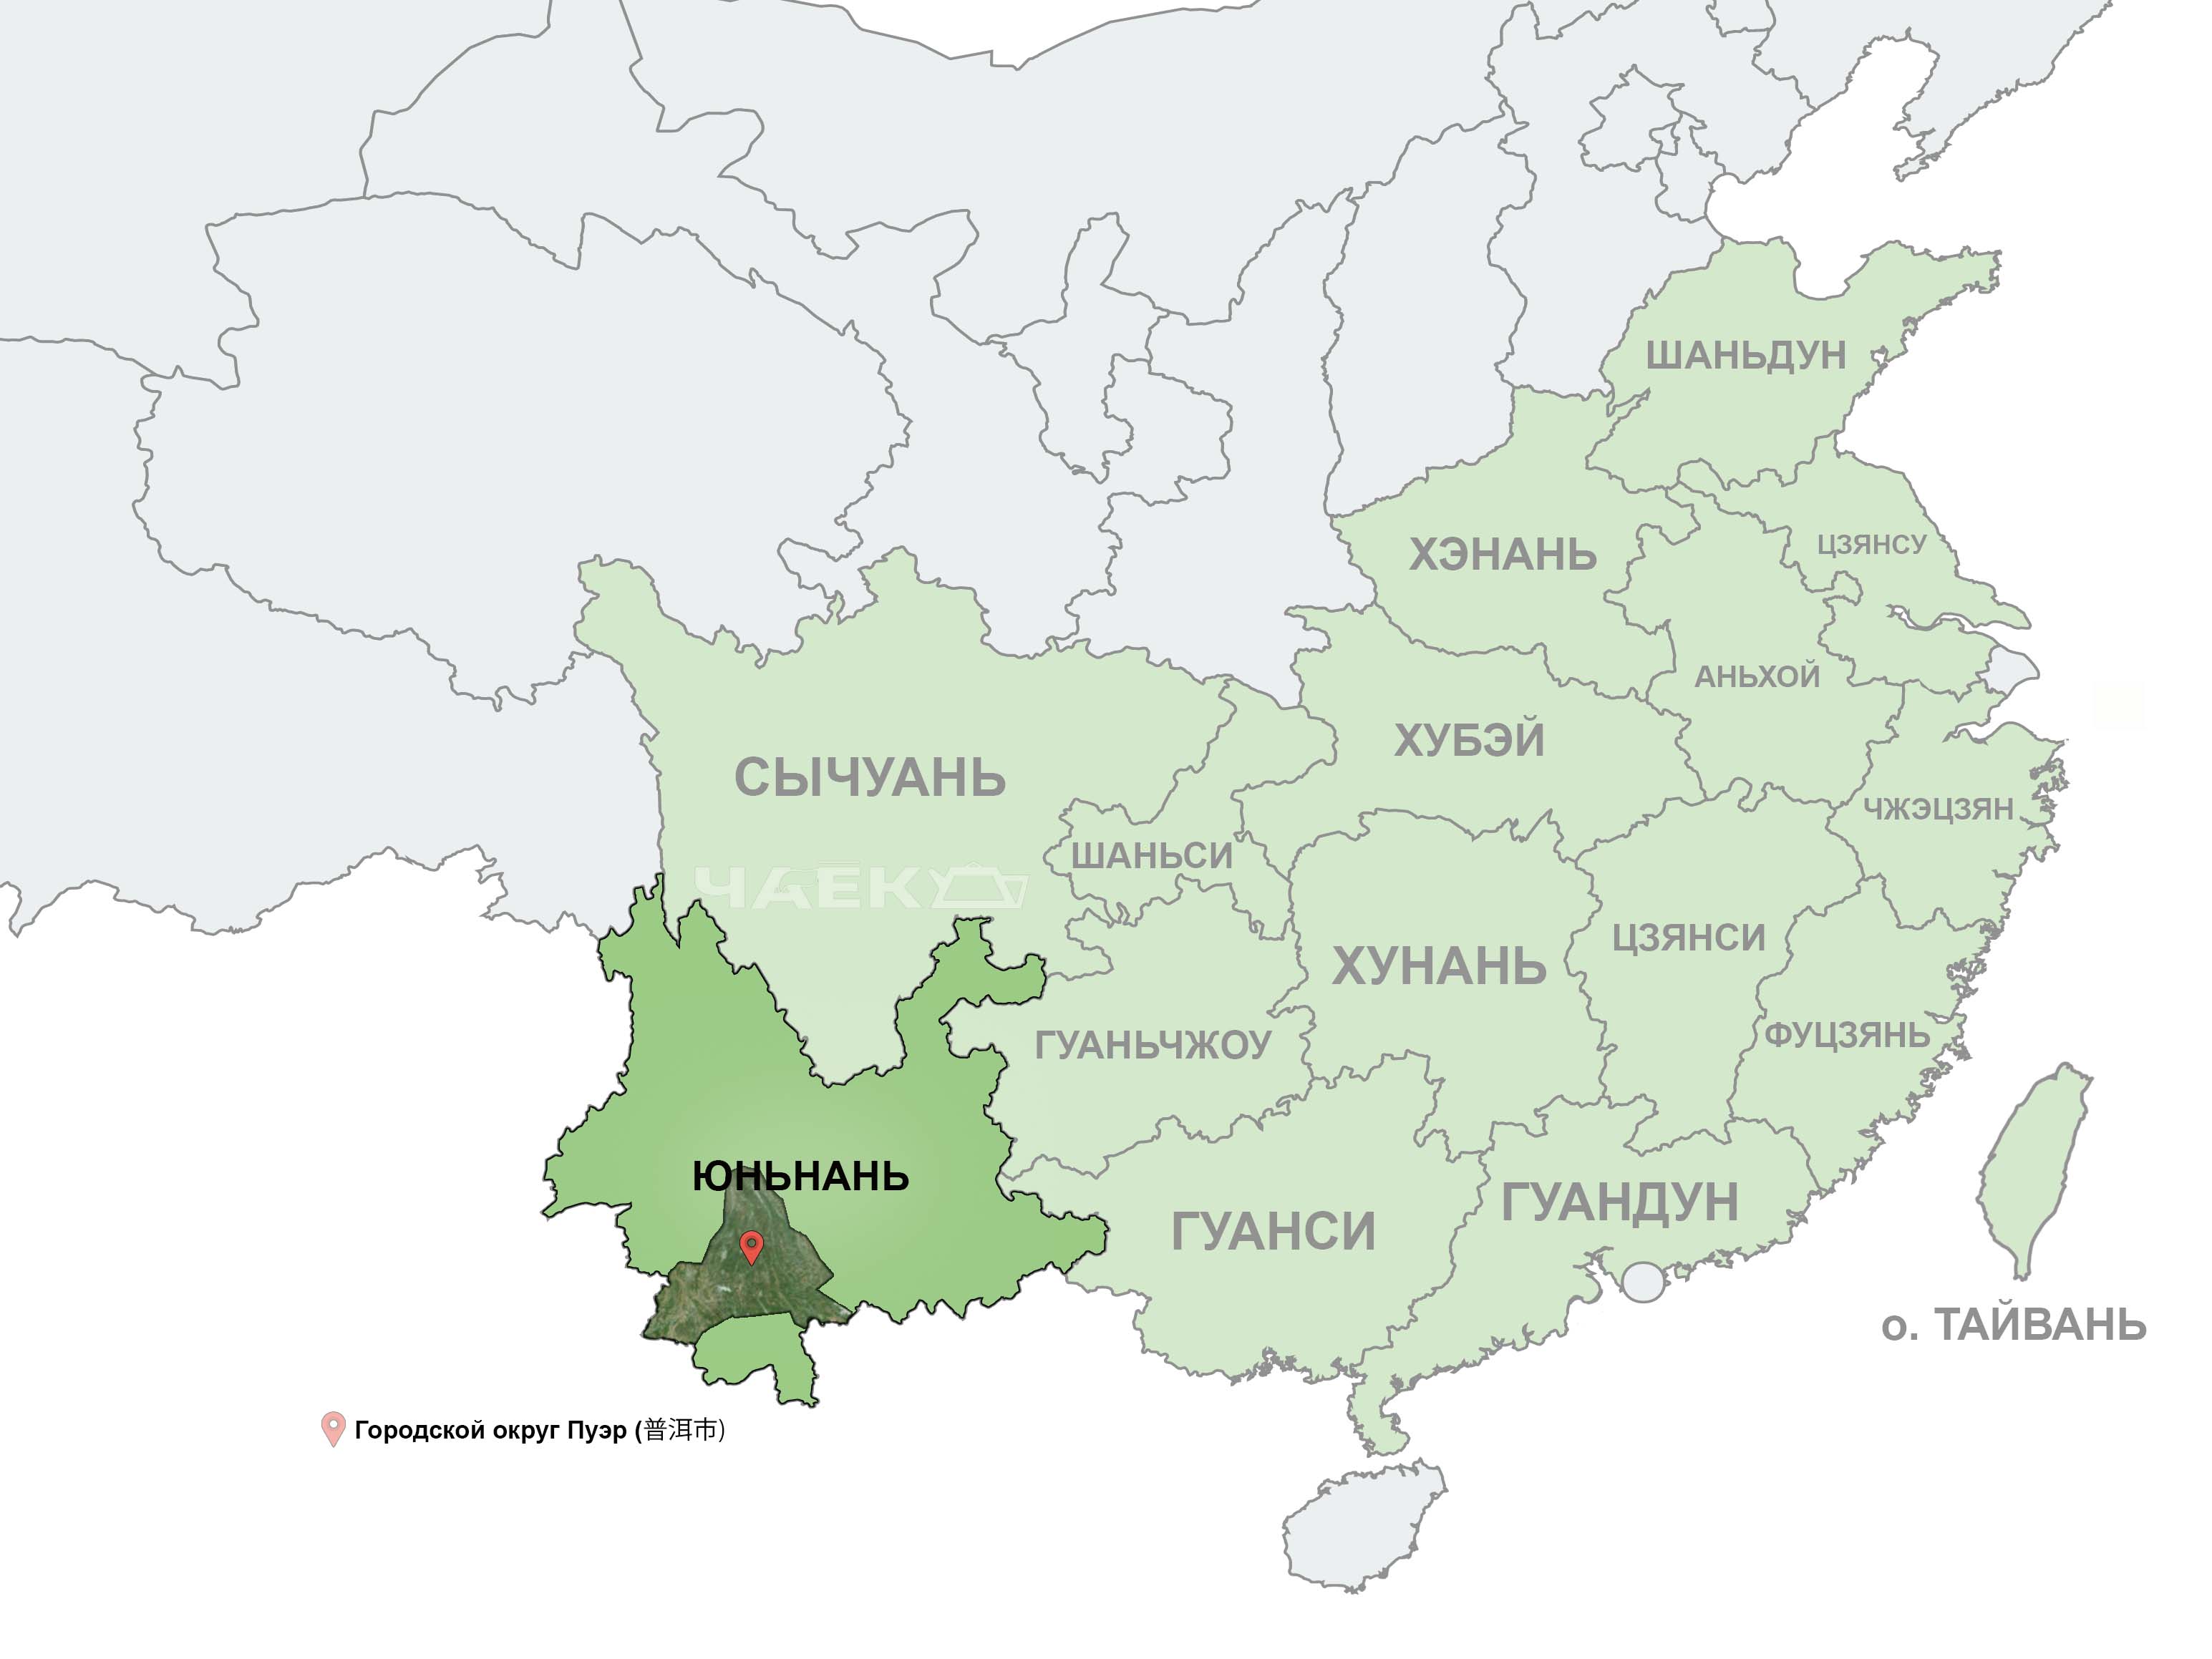 Юньнань на карте Китая. Красным указателем выделен городской округ Пуэр - родина чая пуэр